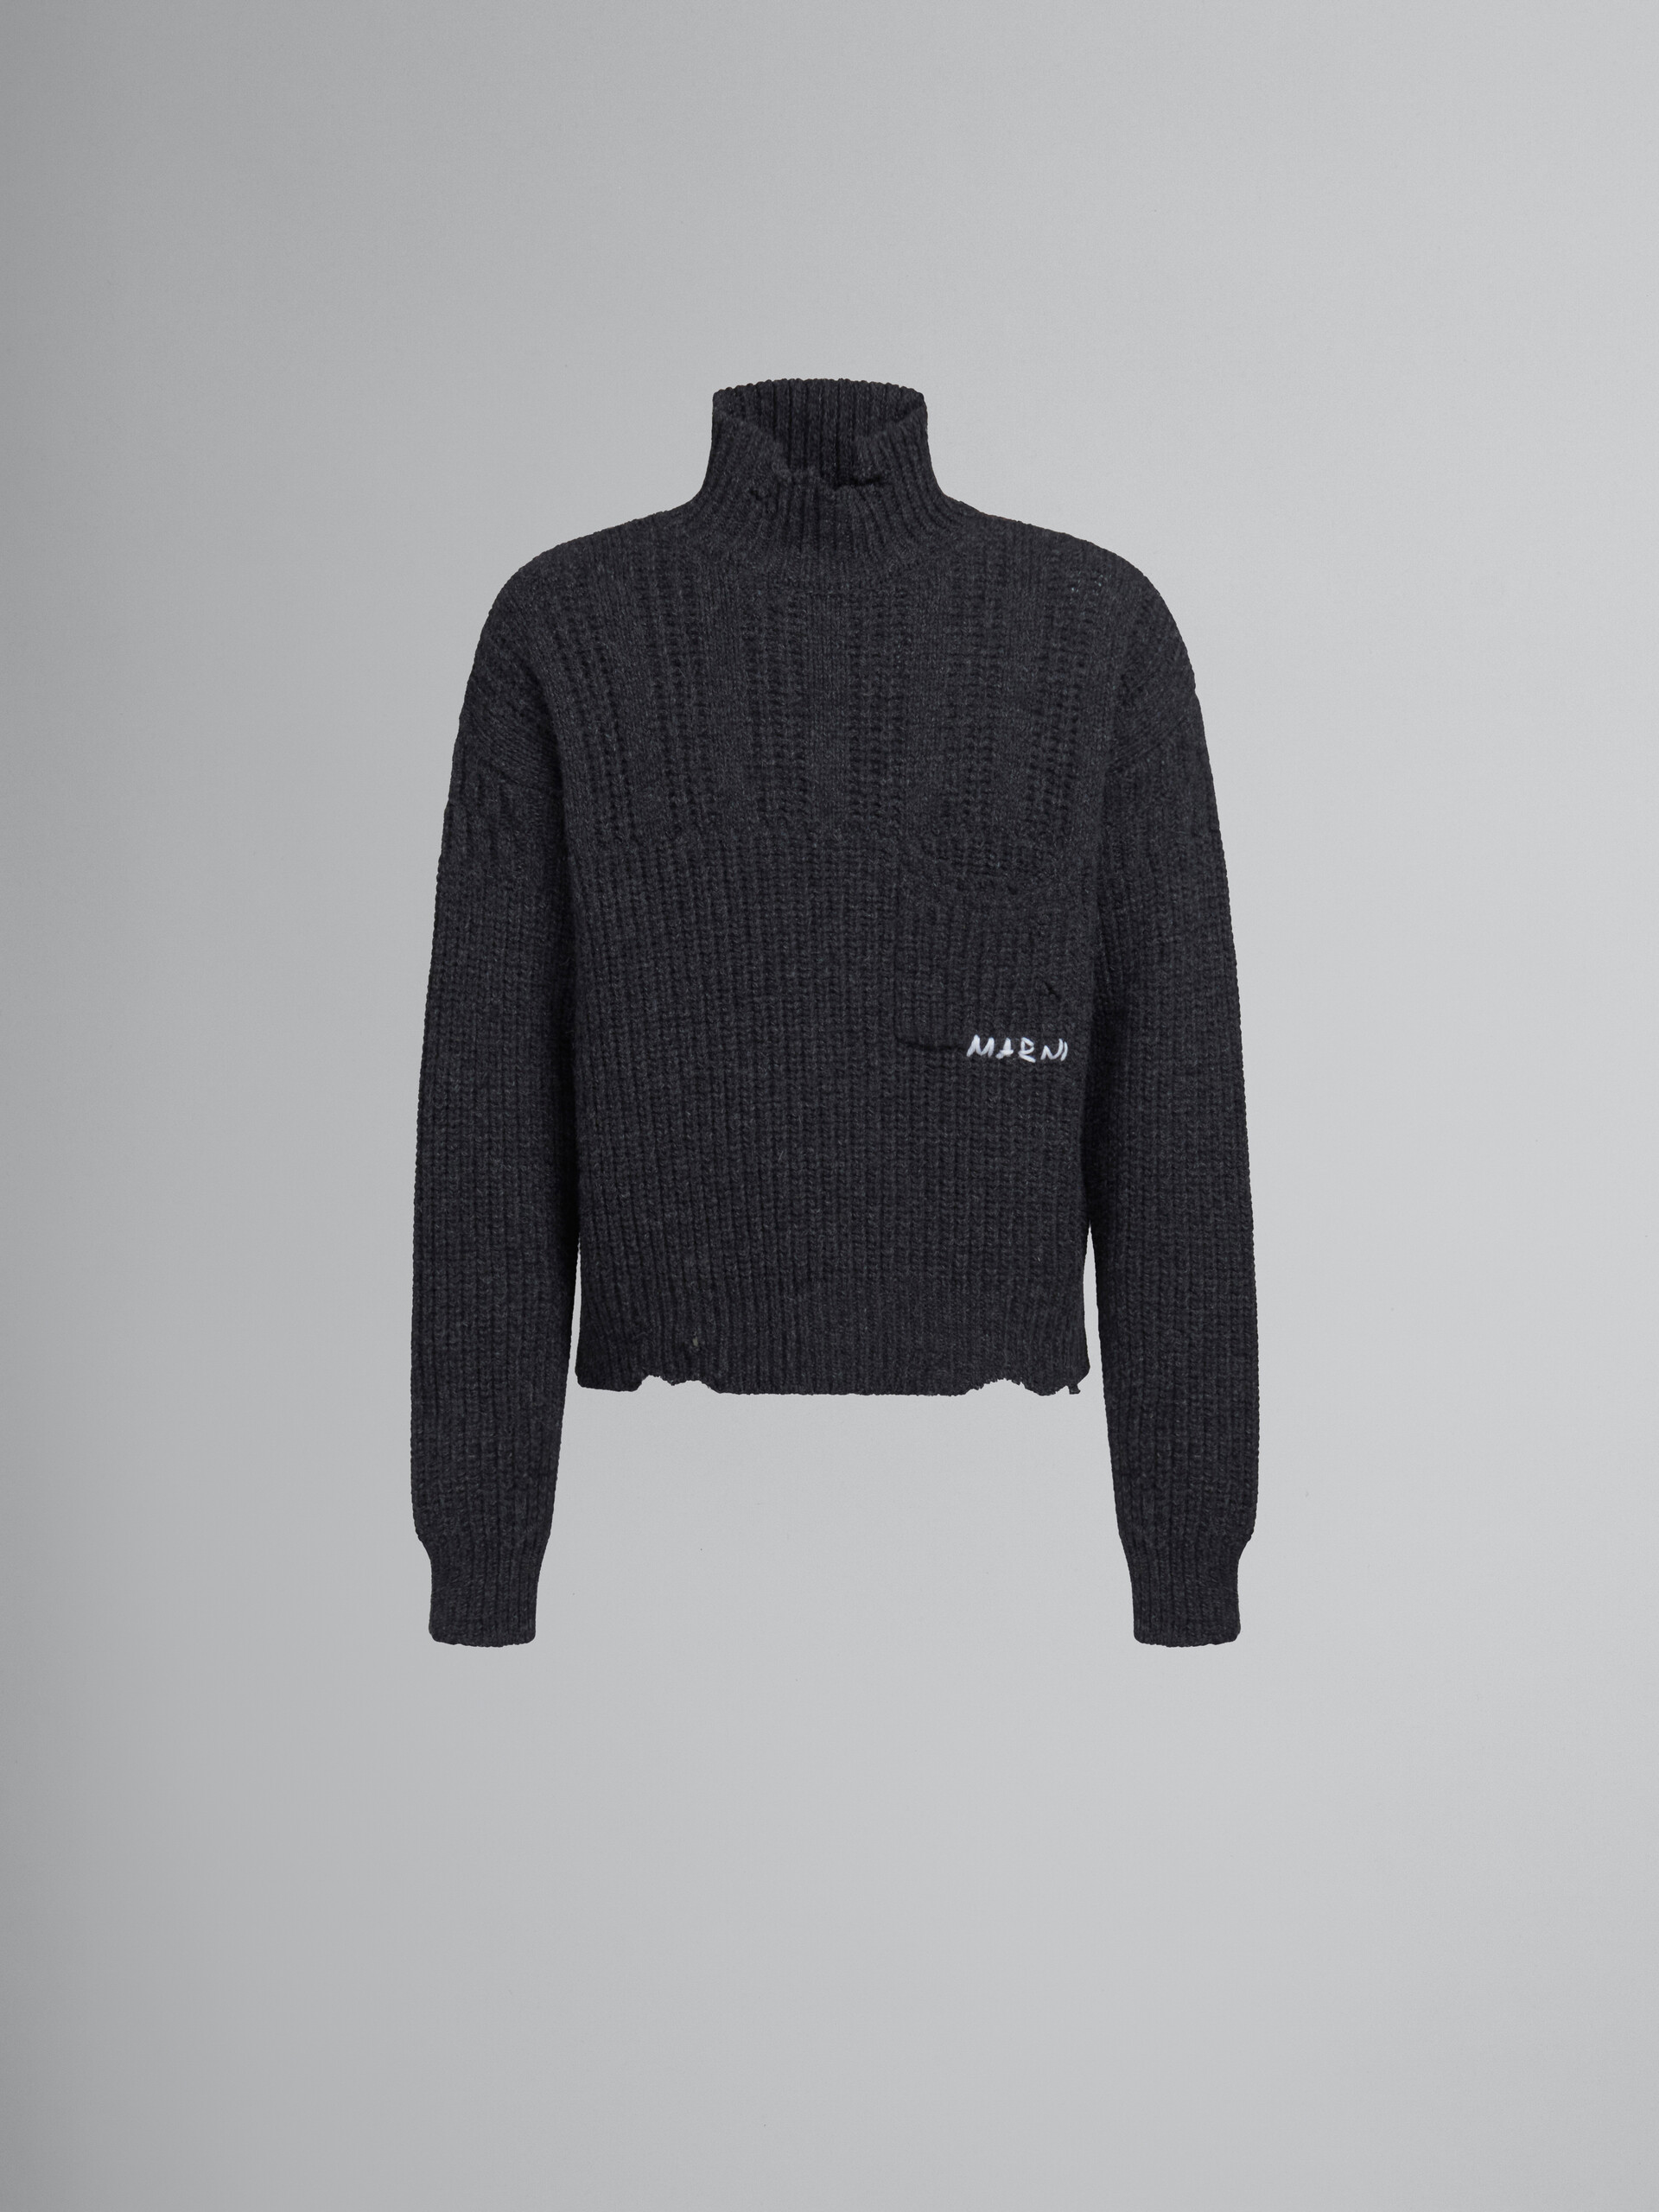 Grauer Pullover aus Schurwolle mit ausgefranstem Saum - Pullover - Image 1